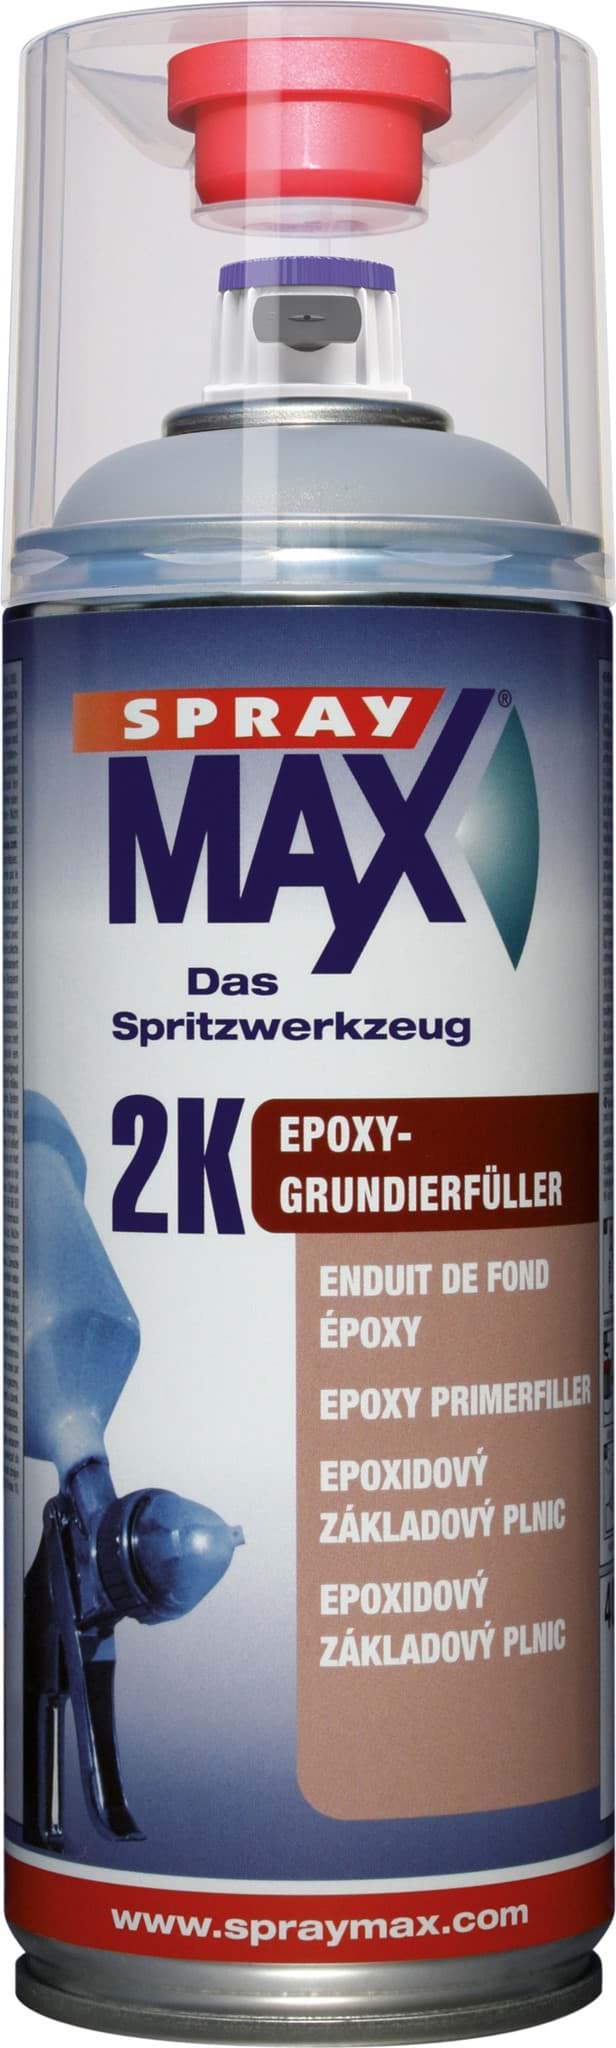 Picture of SprayMax 2K Epoxy-Grundierfüller grau Spray 400ml